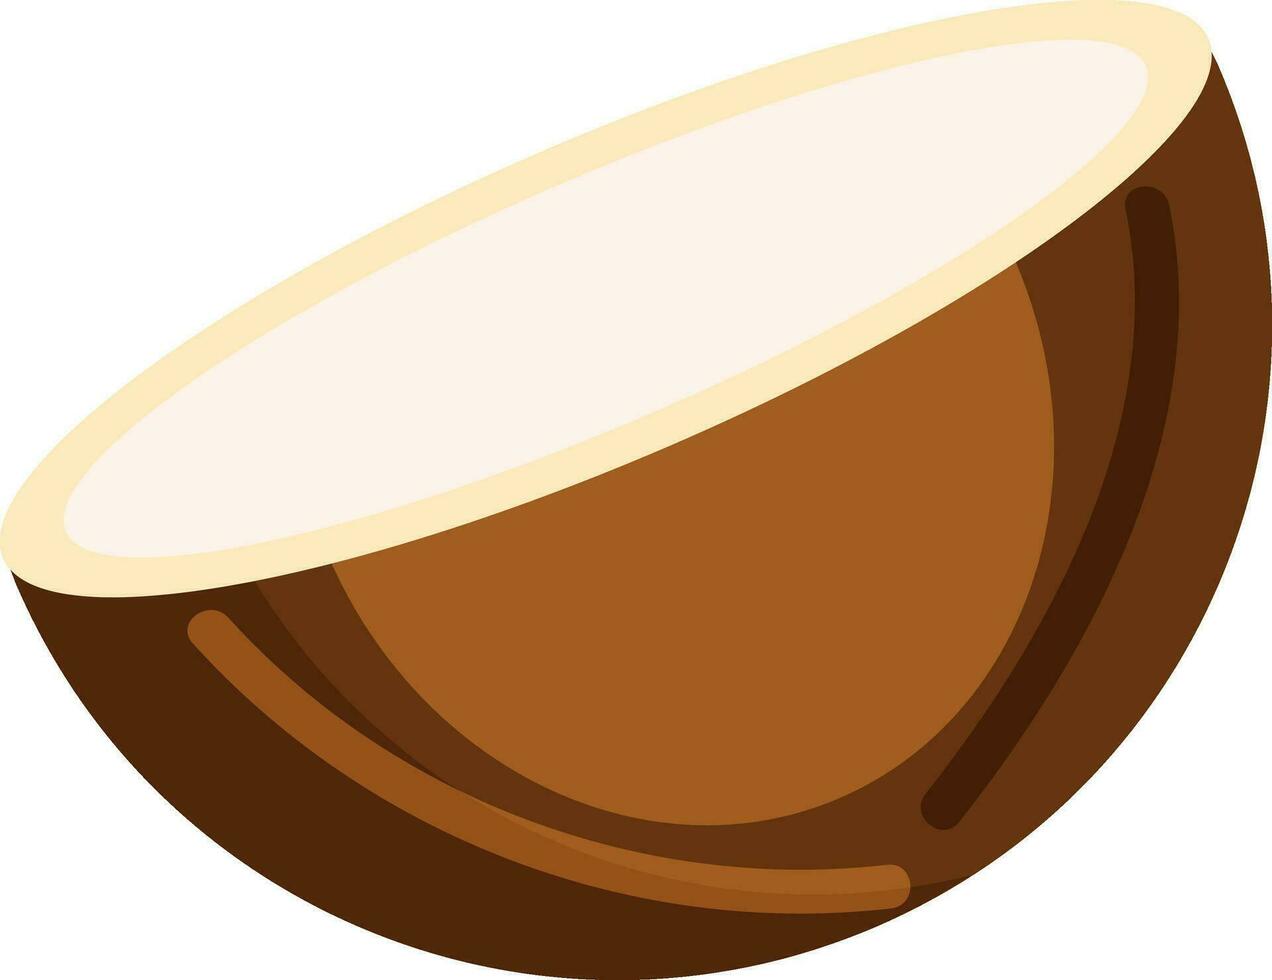 halv kokos element i brun Färg. vektor